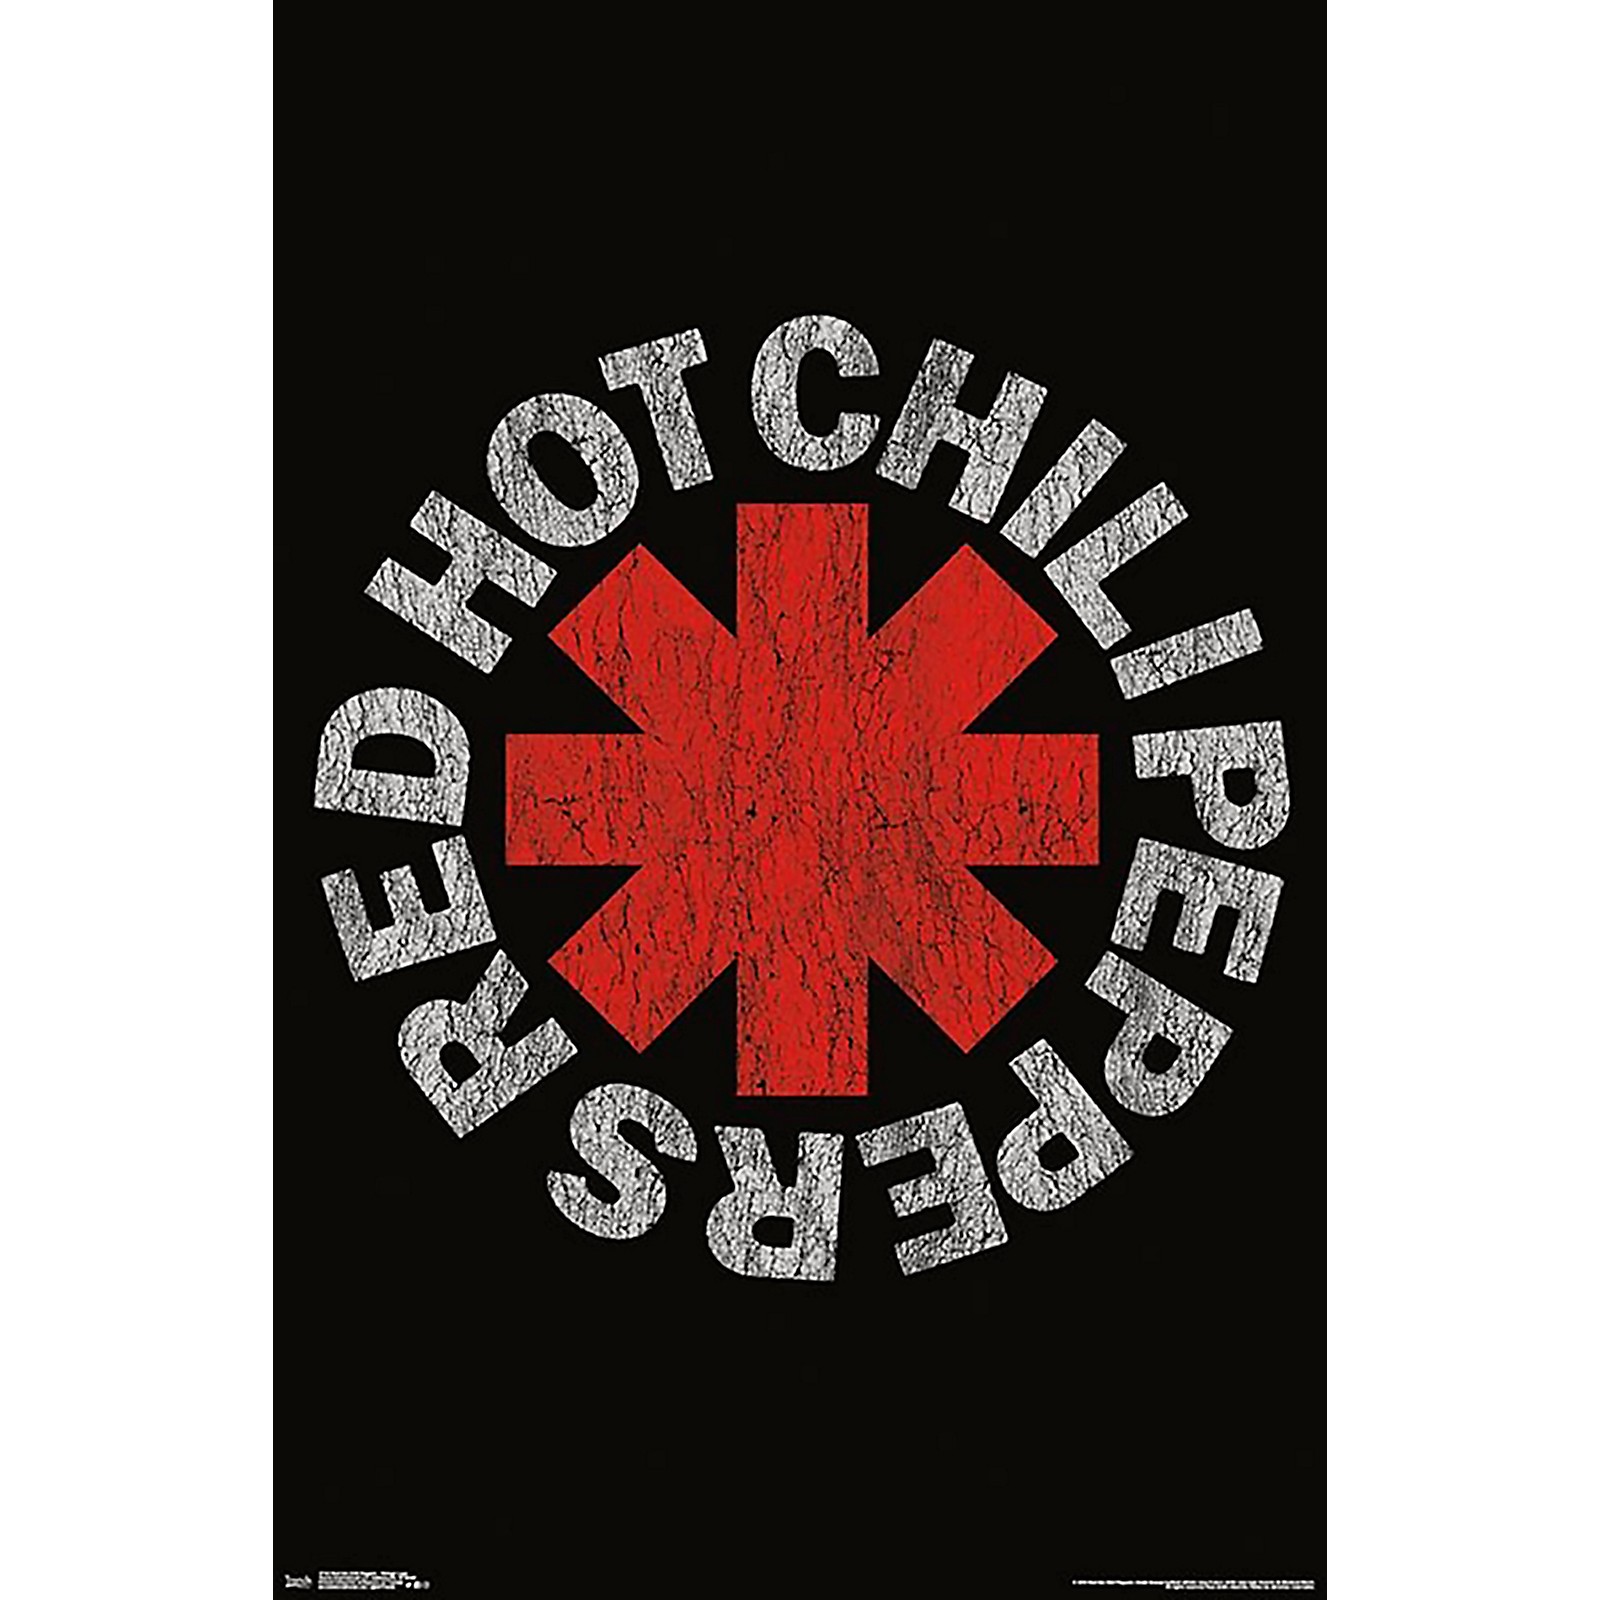 Elskede Ufrugtbar excitation Trends International Red Hot Chili Peppers Vintage Logo Poster Rolled  Unframed | Guitar Center